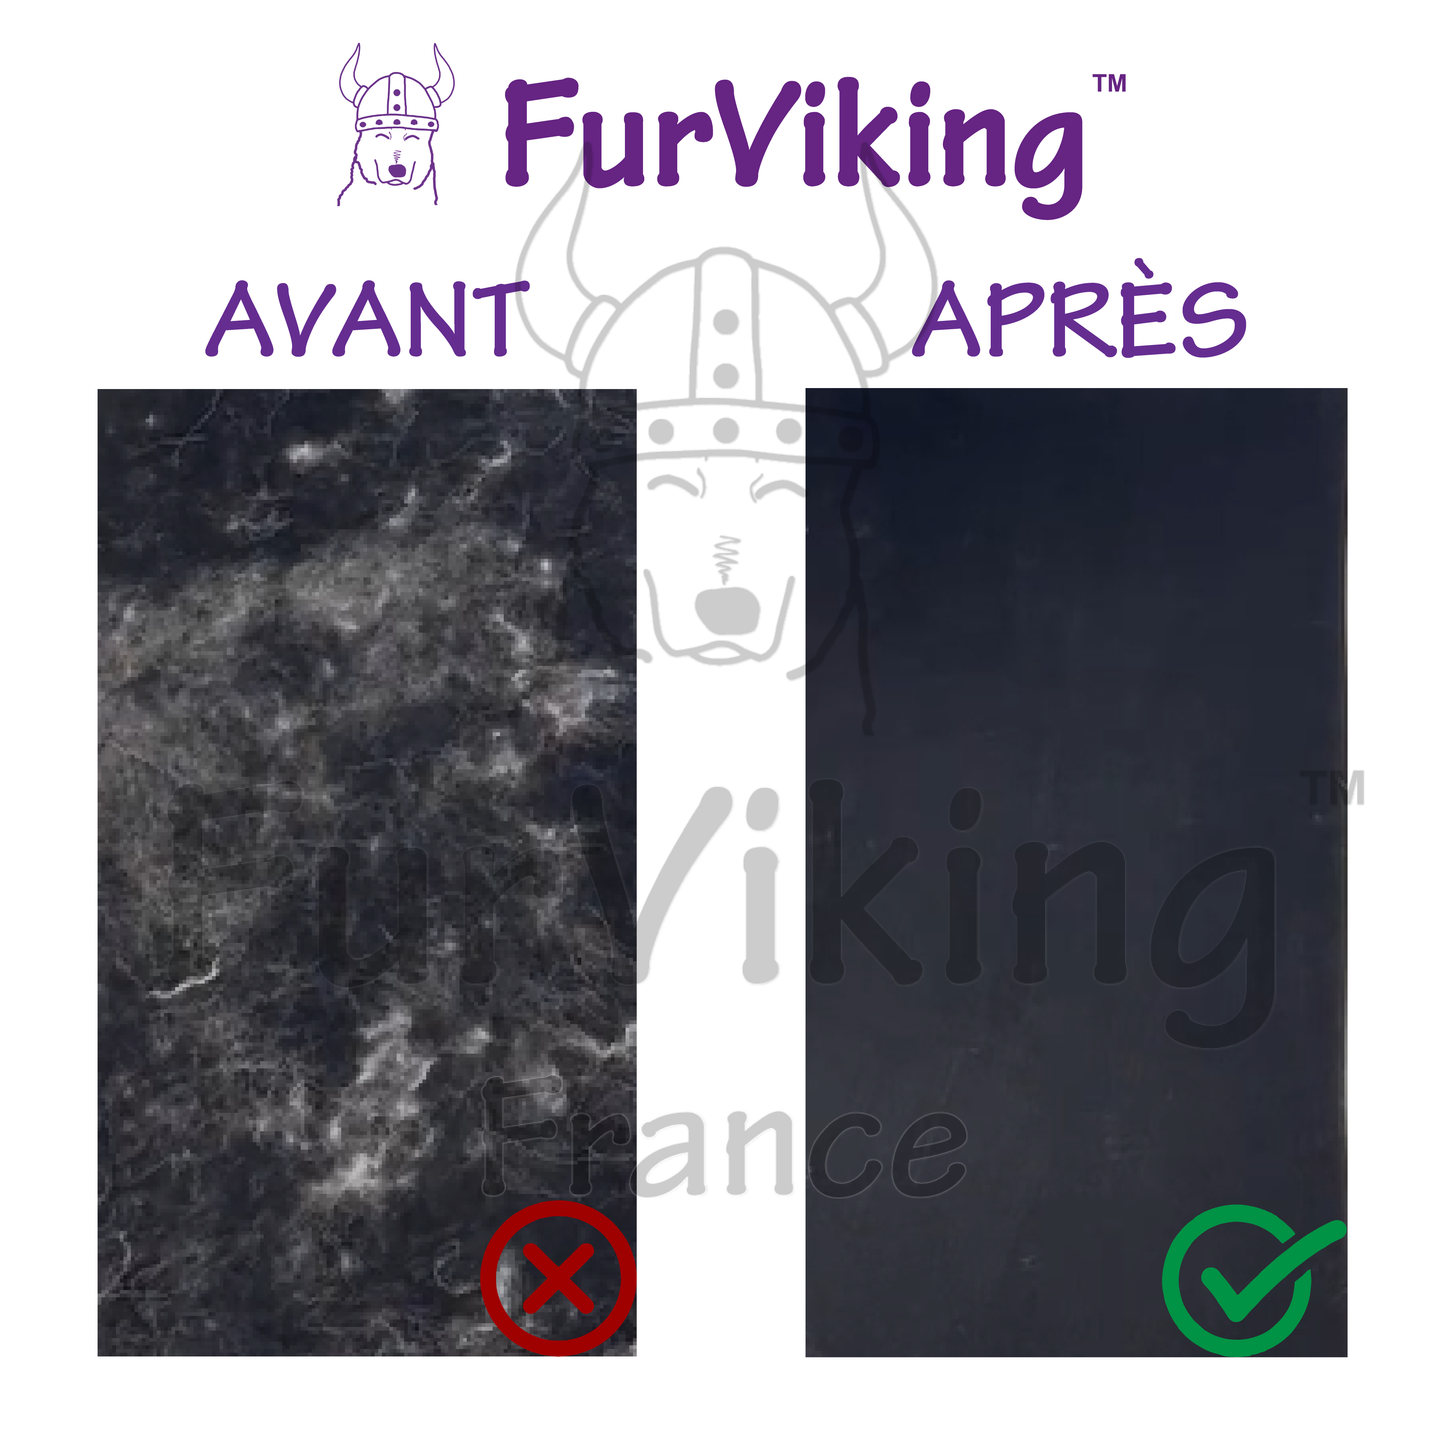 Comparatif avant l'utilisation et après l'utilisation du FurViking